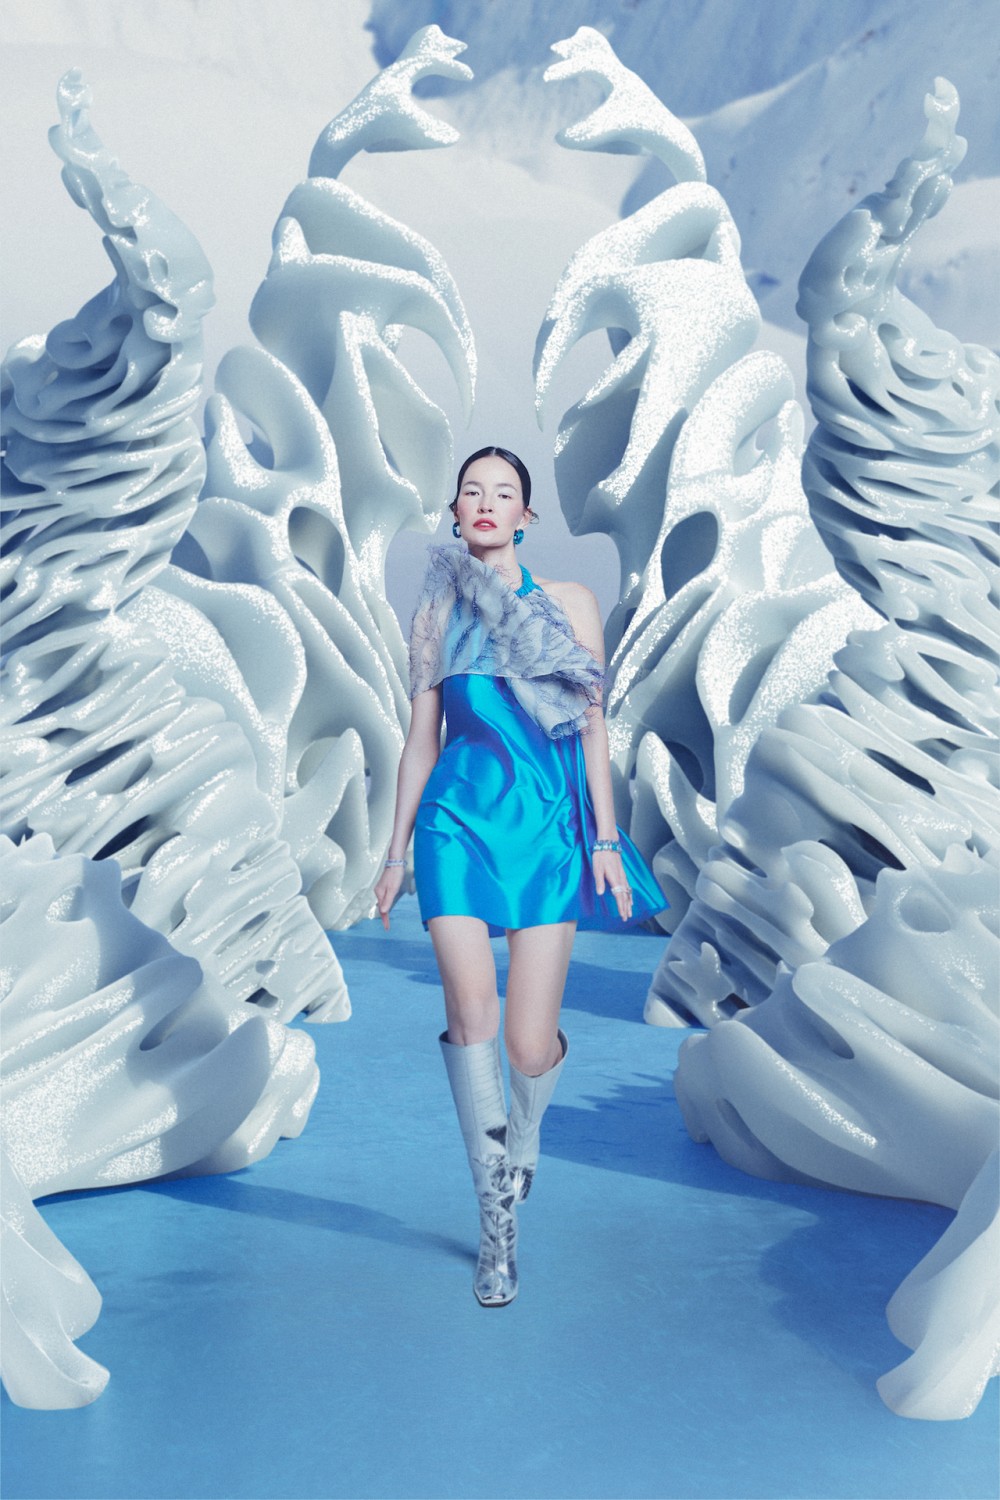 Новогодняя digital-обложка Elle Kazakhstan